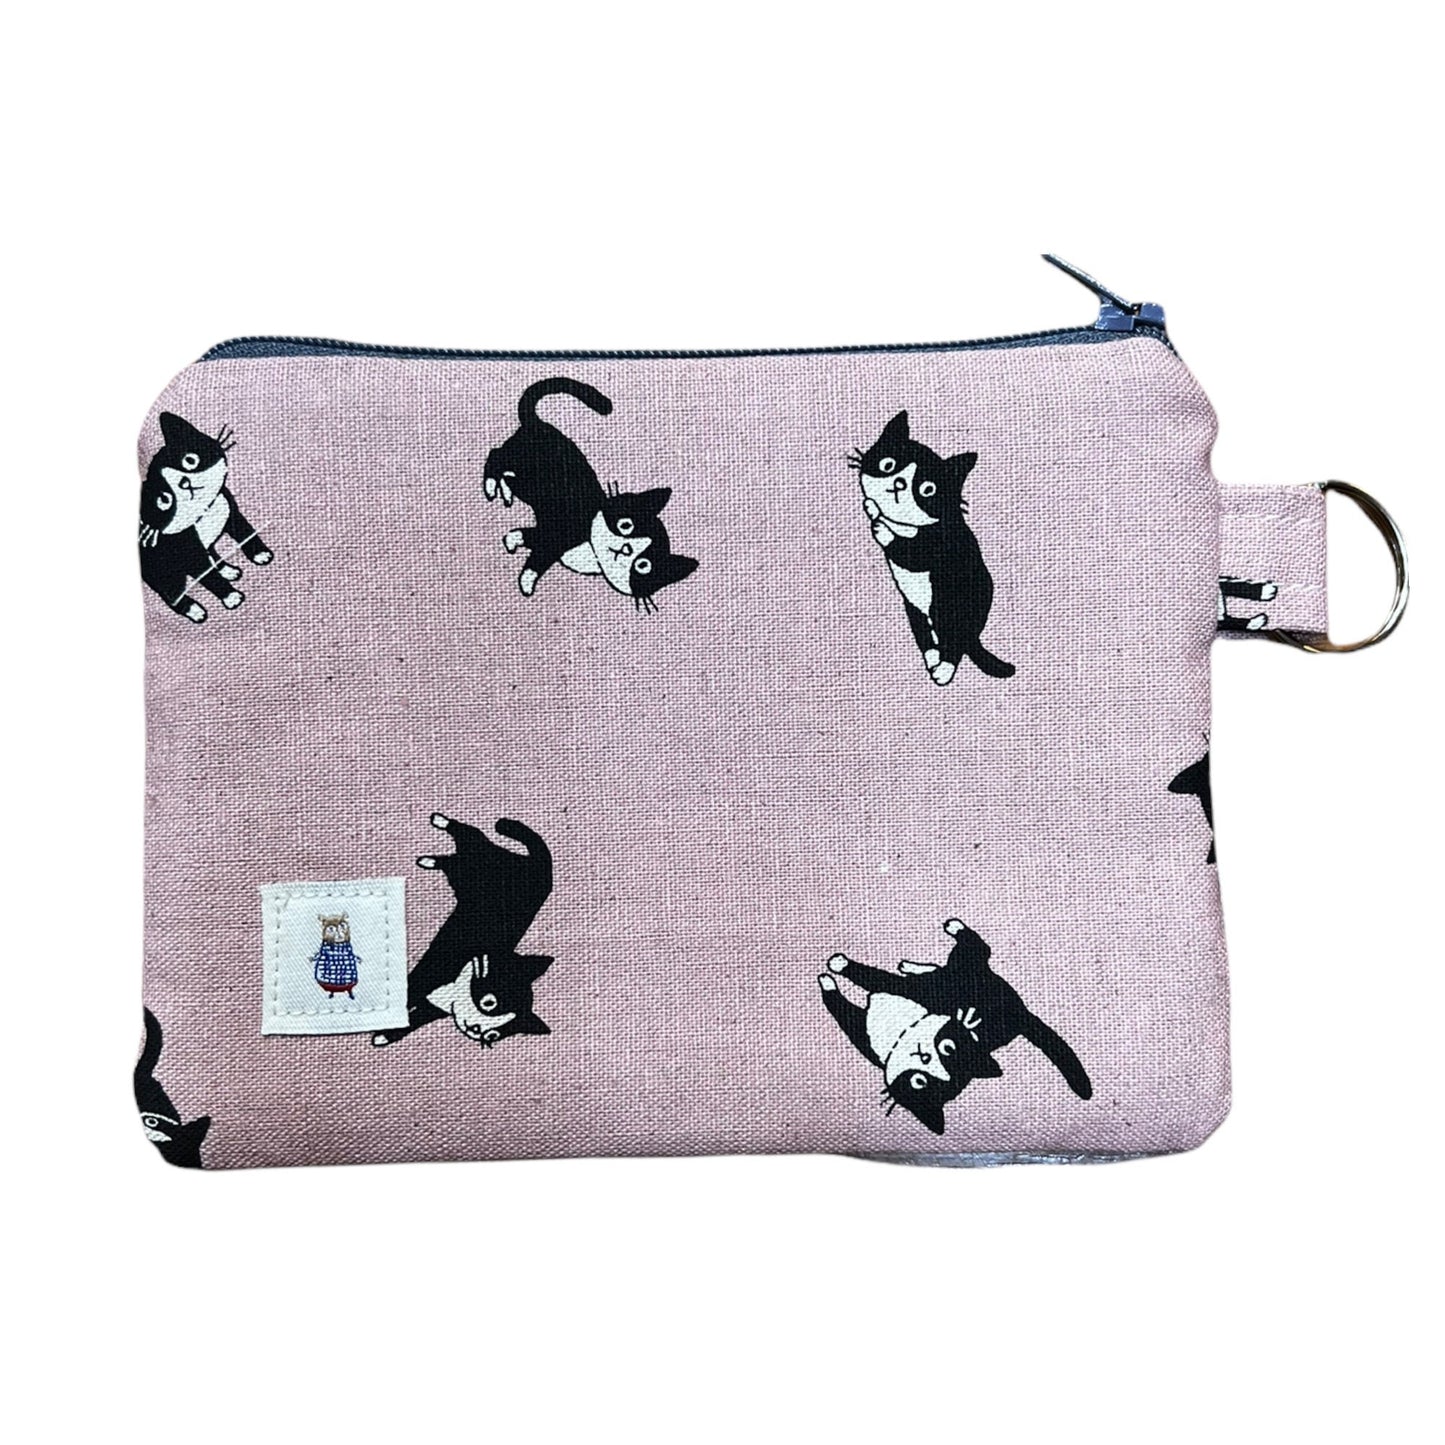 Pink cat print coin purse, cat print pouch, black cat money purse, kawaii canvas zipper bag, 6" x 4.5", gift for cat lover.